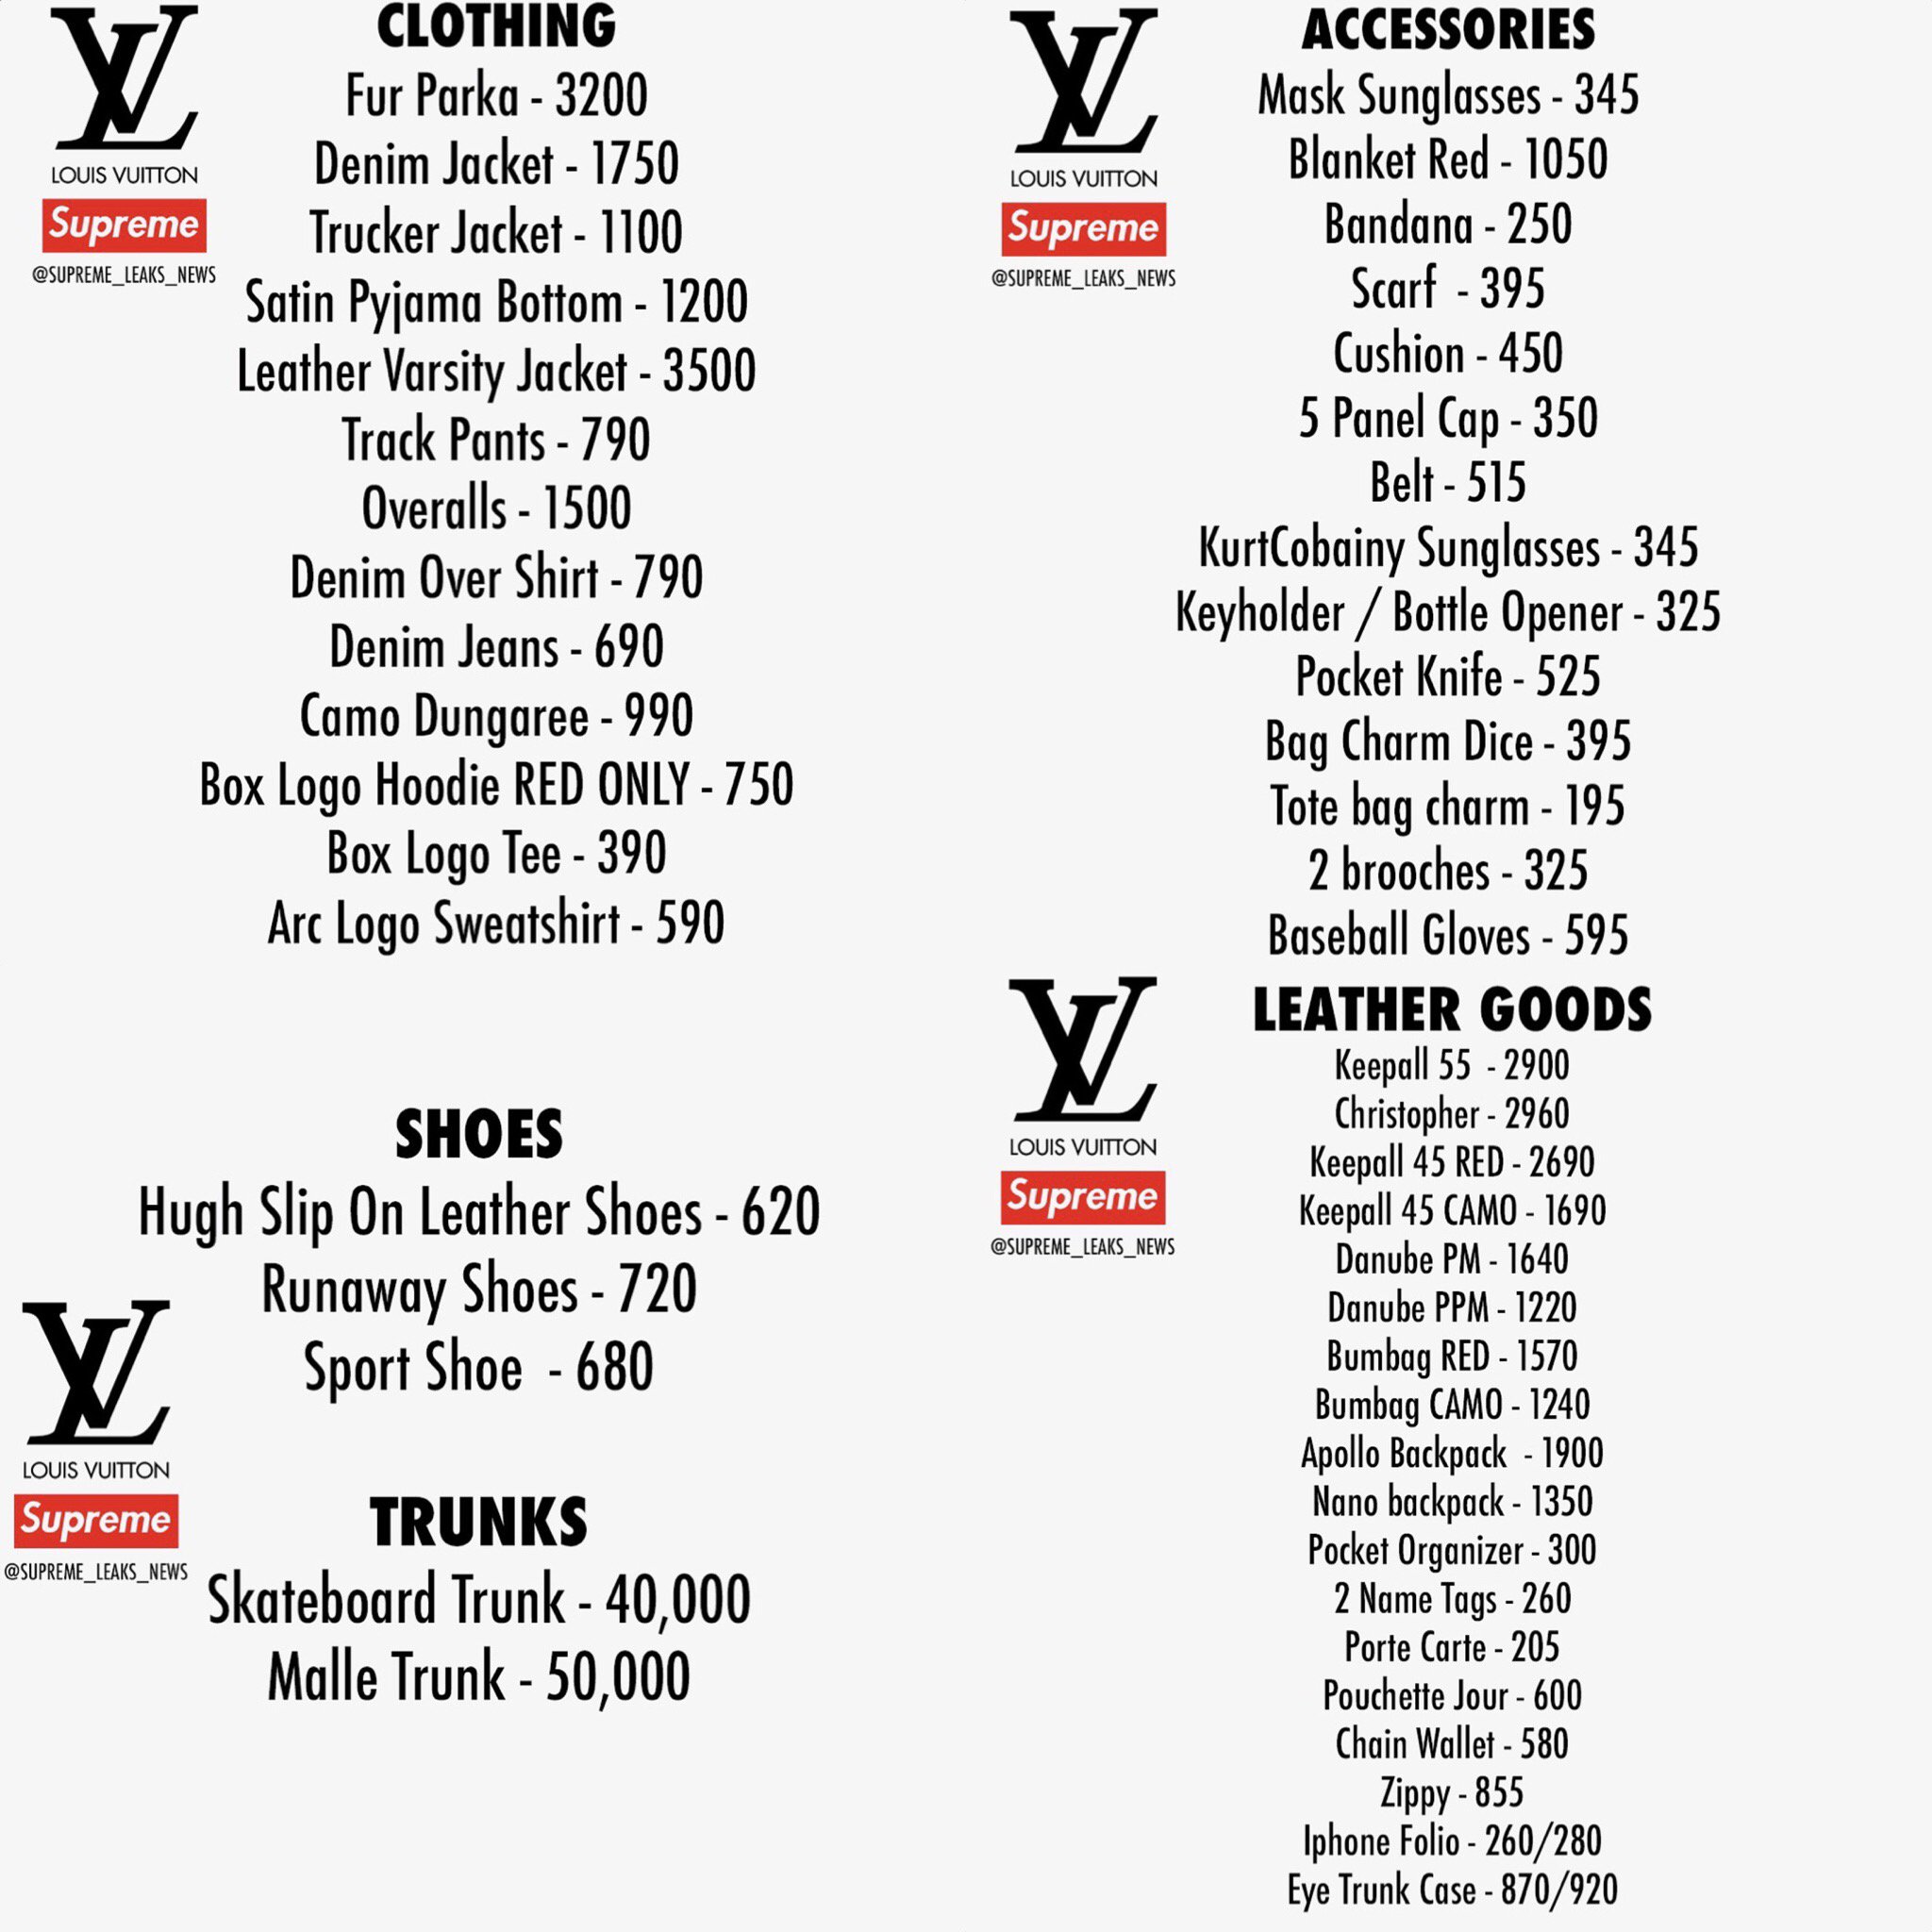 Louis Vuitton Supreme 2017 Overalls